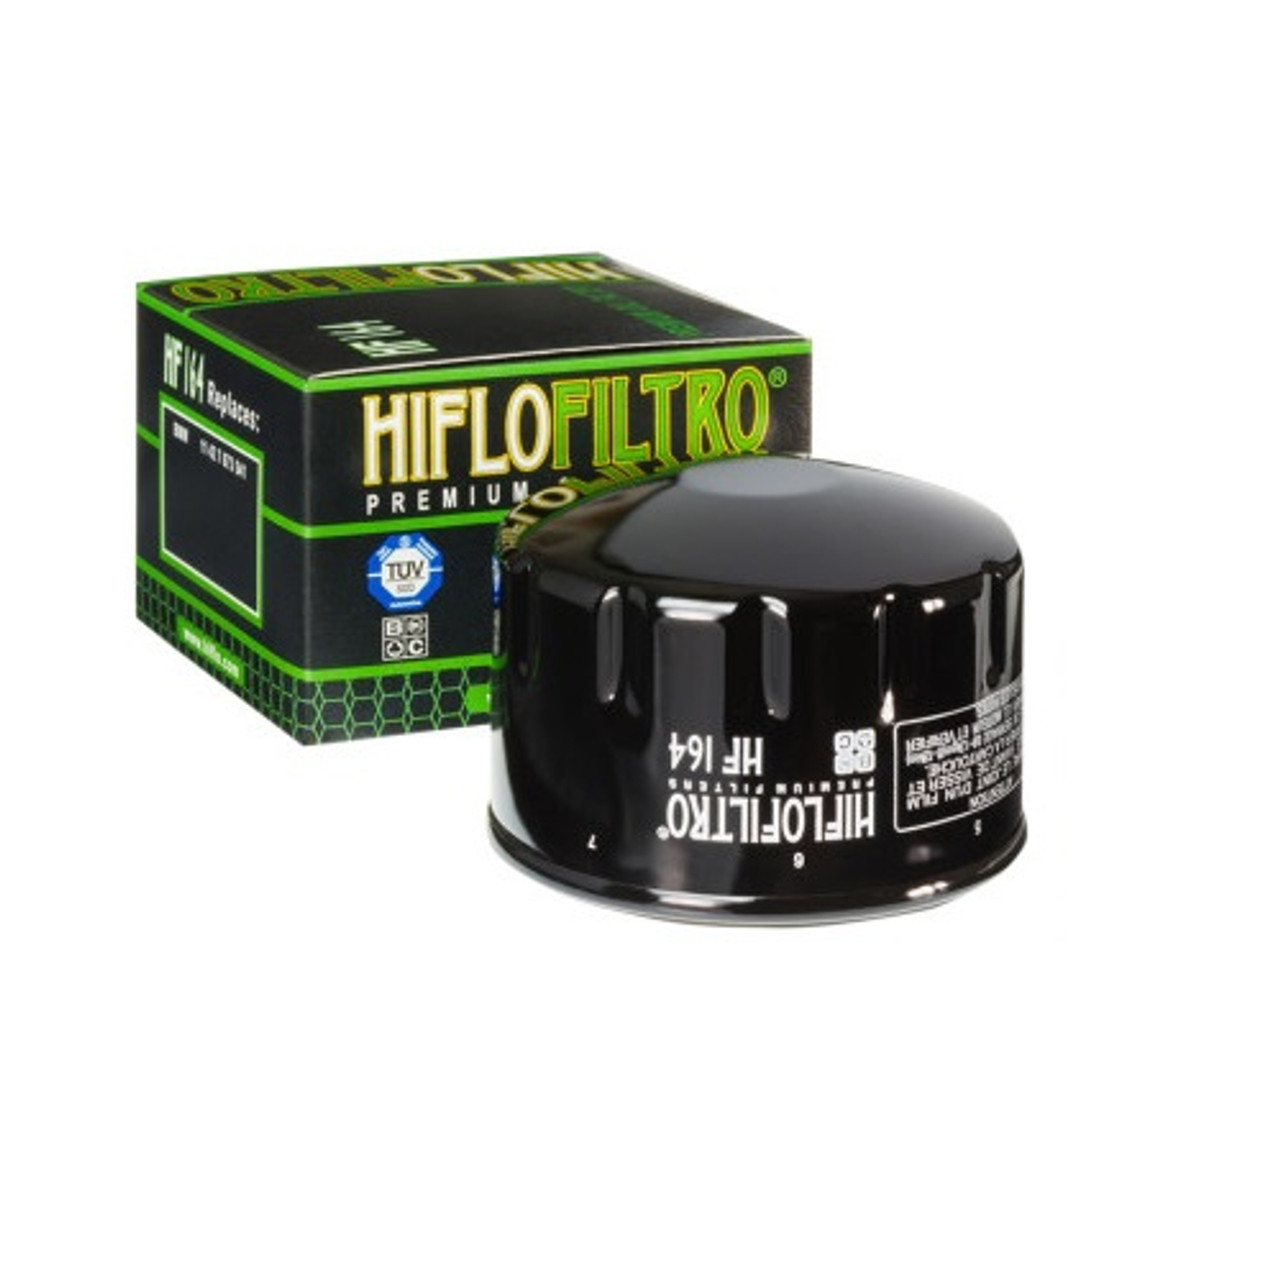 Oil Filter HF164